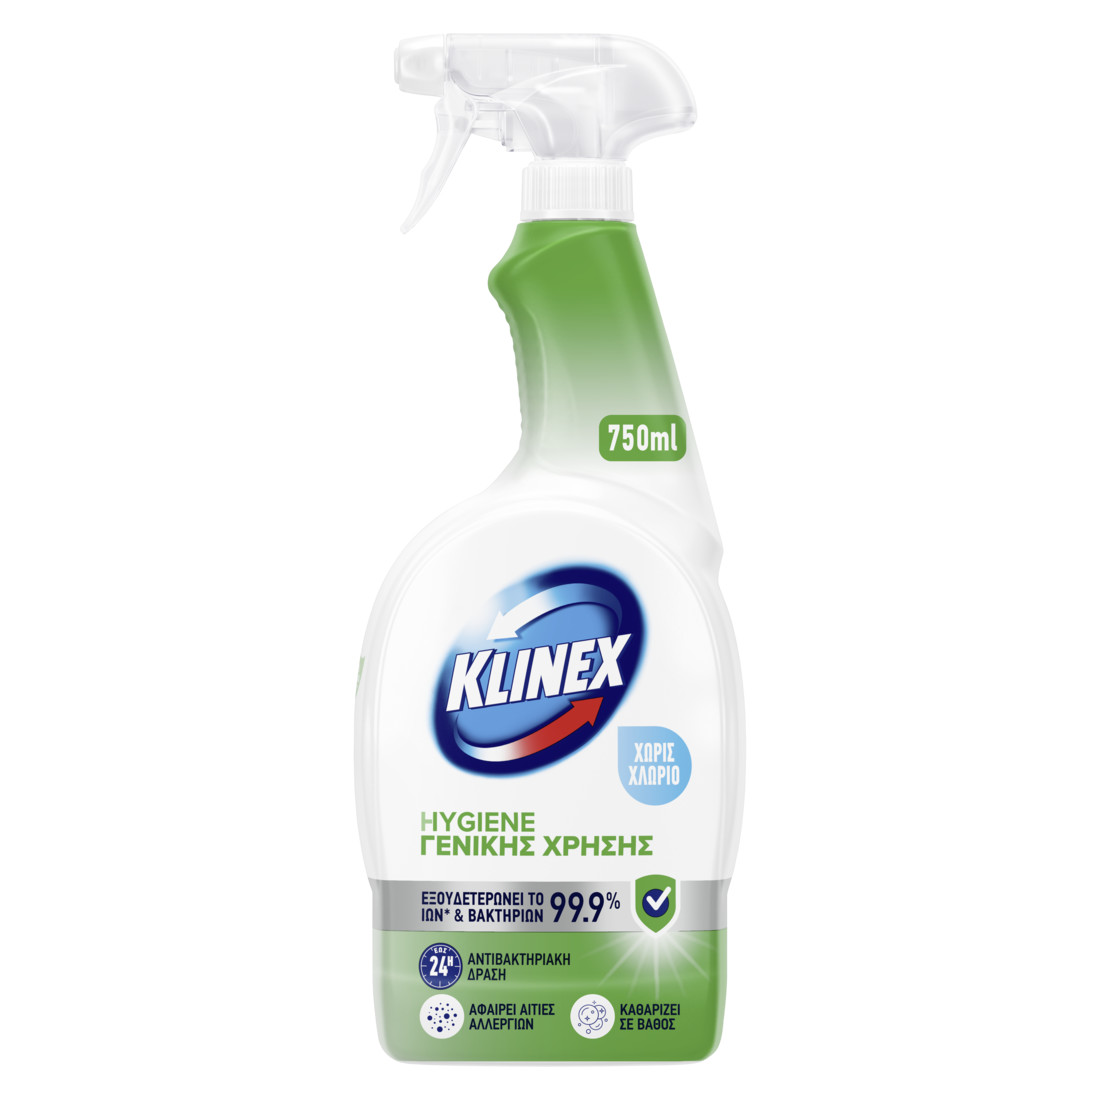 Klinex Hygiene Σπρέυ Γενικής χρήσης